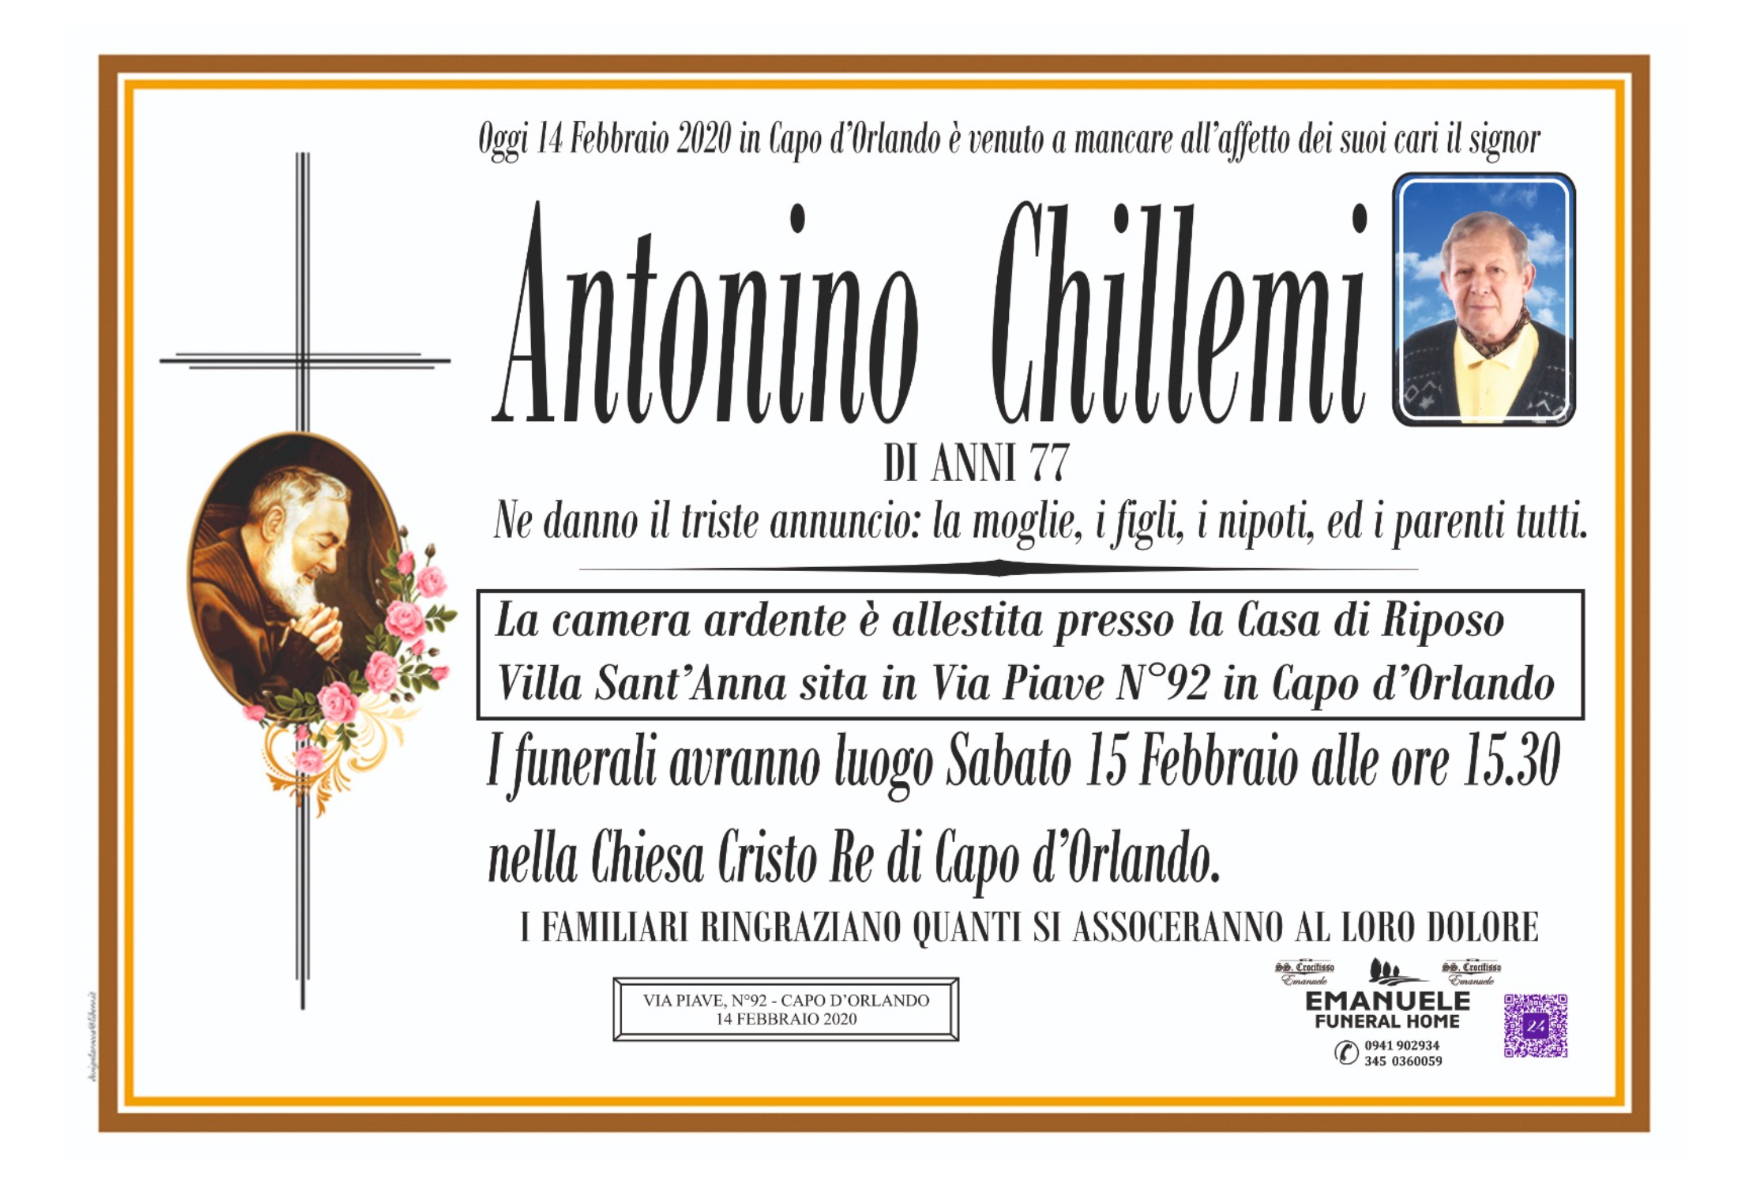 Antonino Chillemi